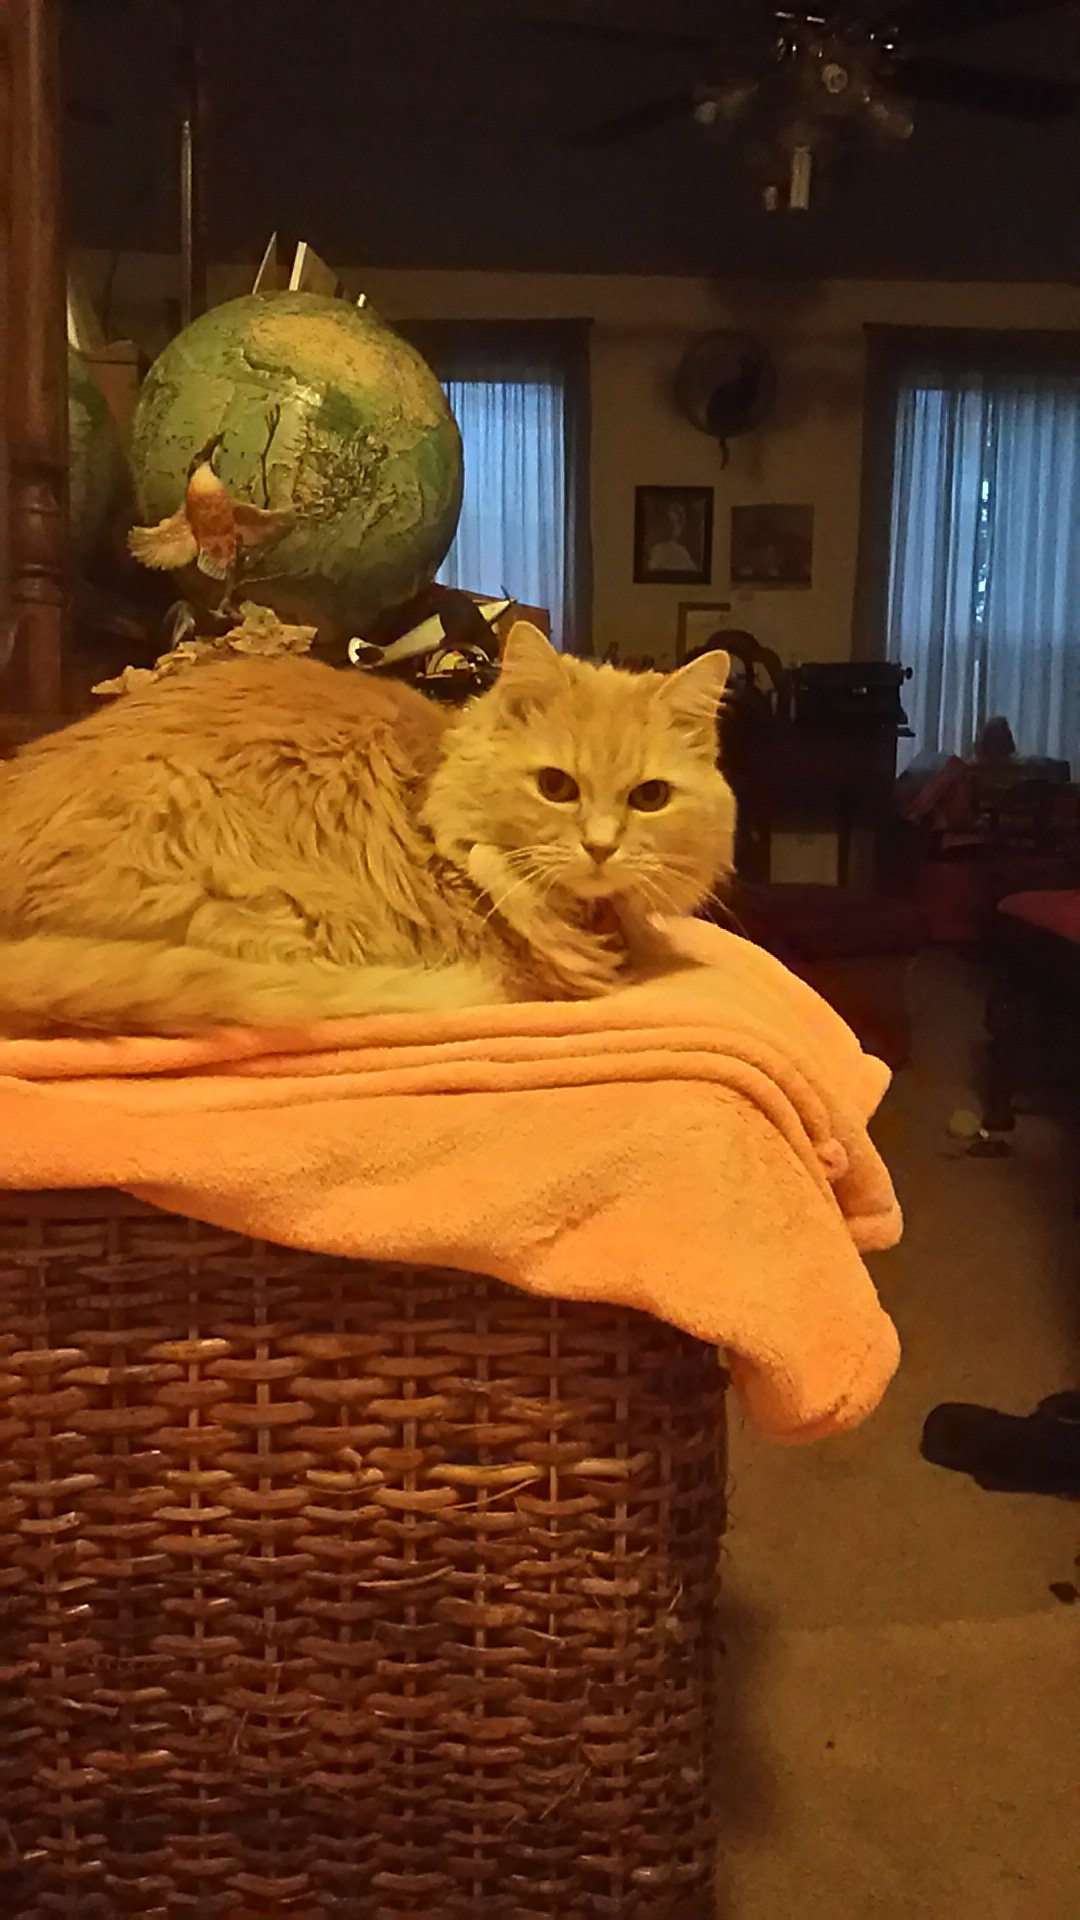 Marigold on laundry basket